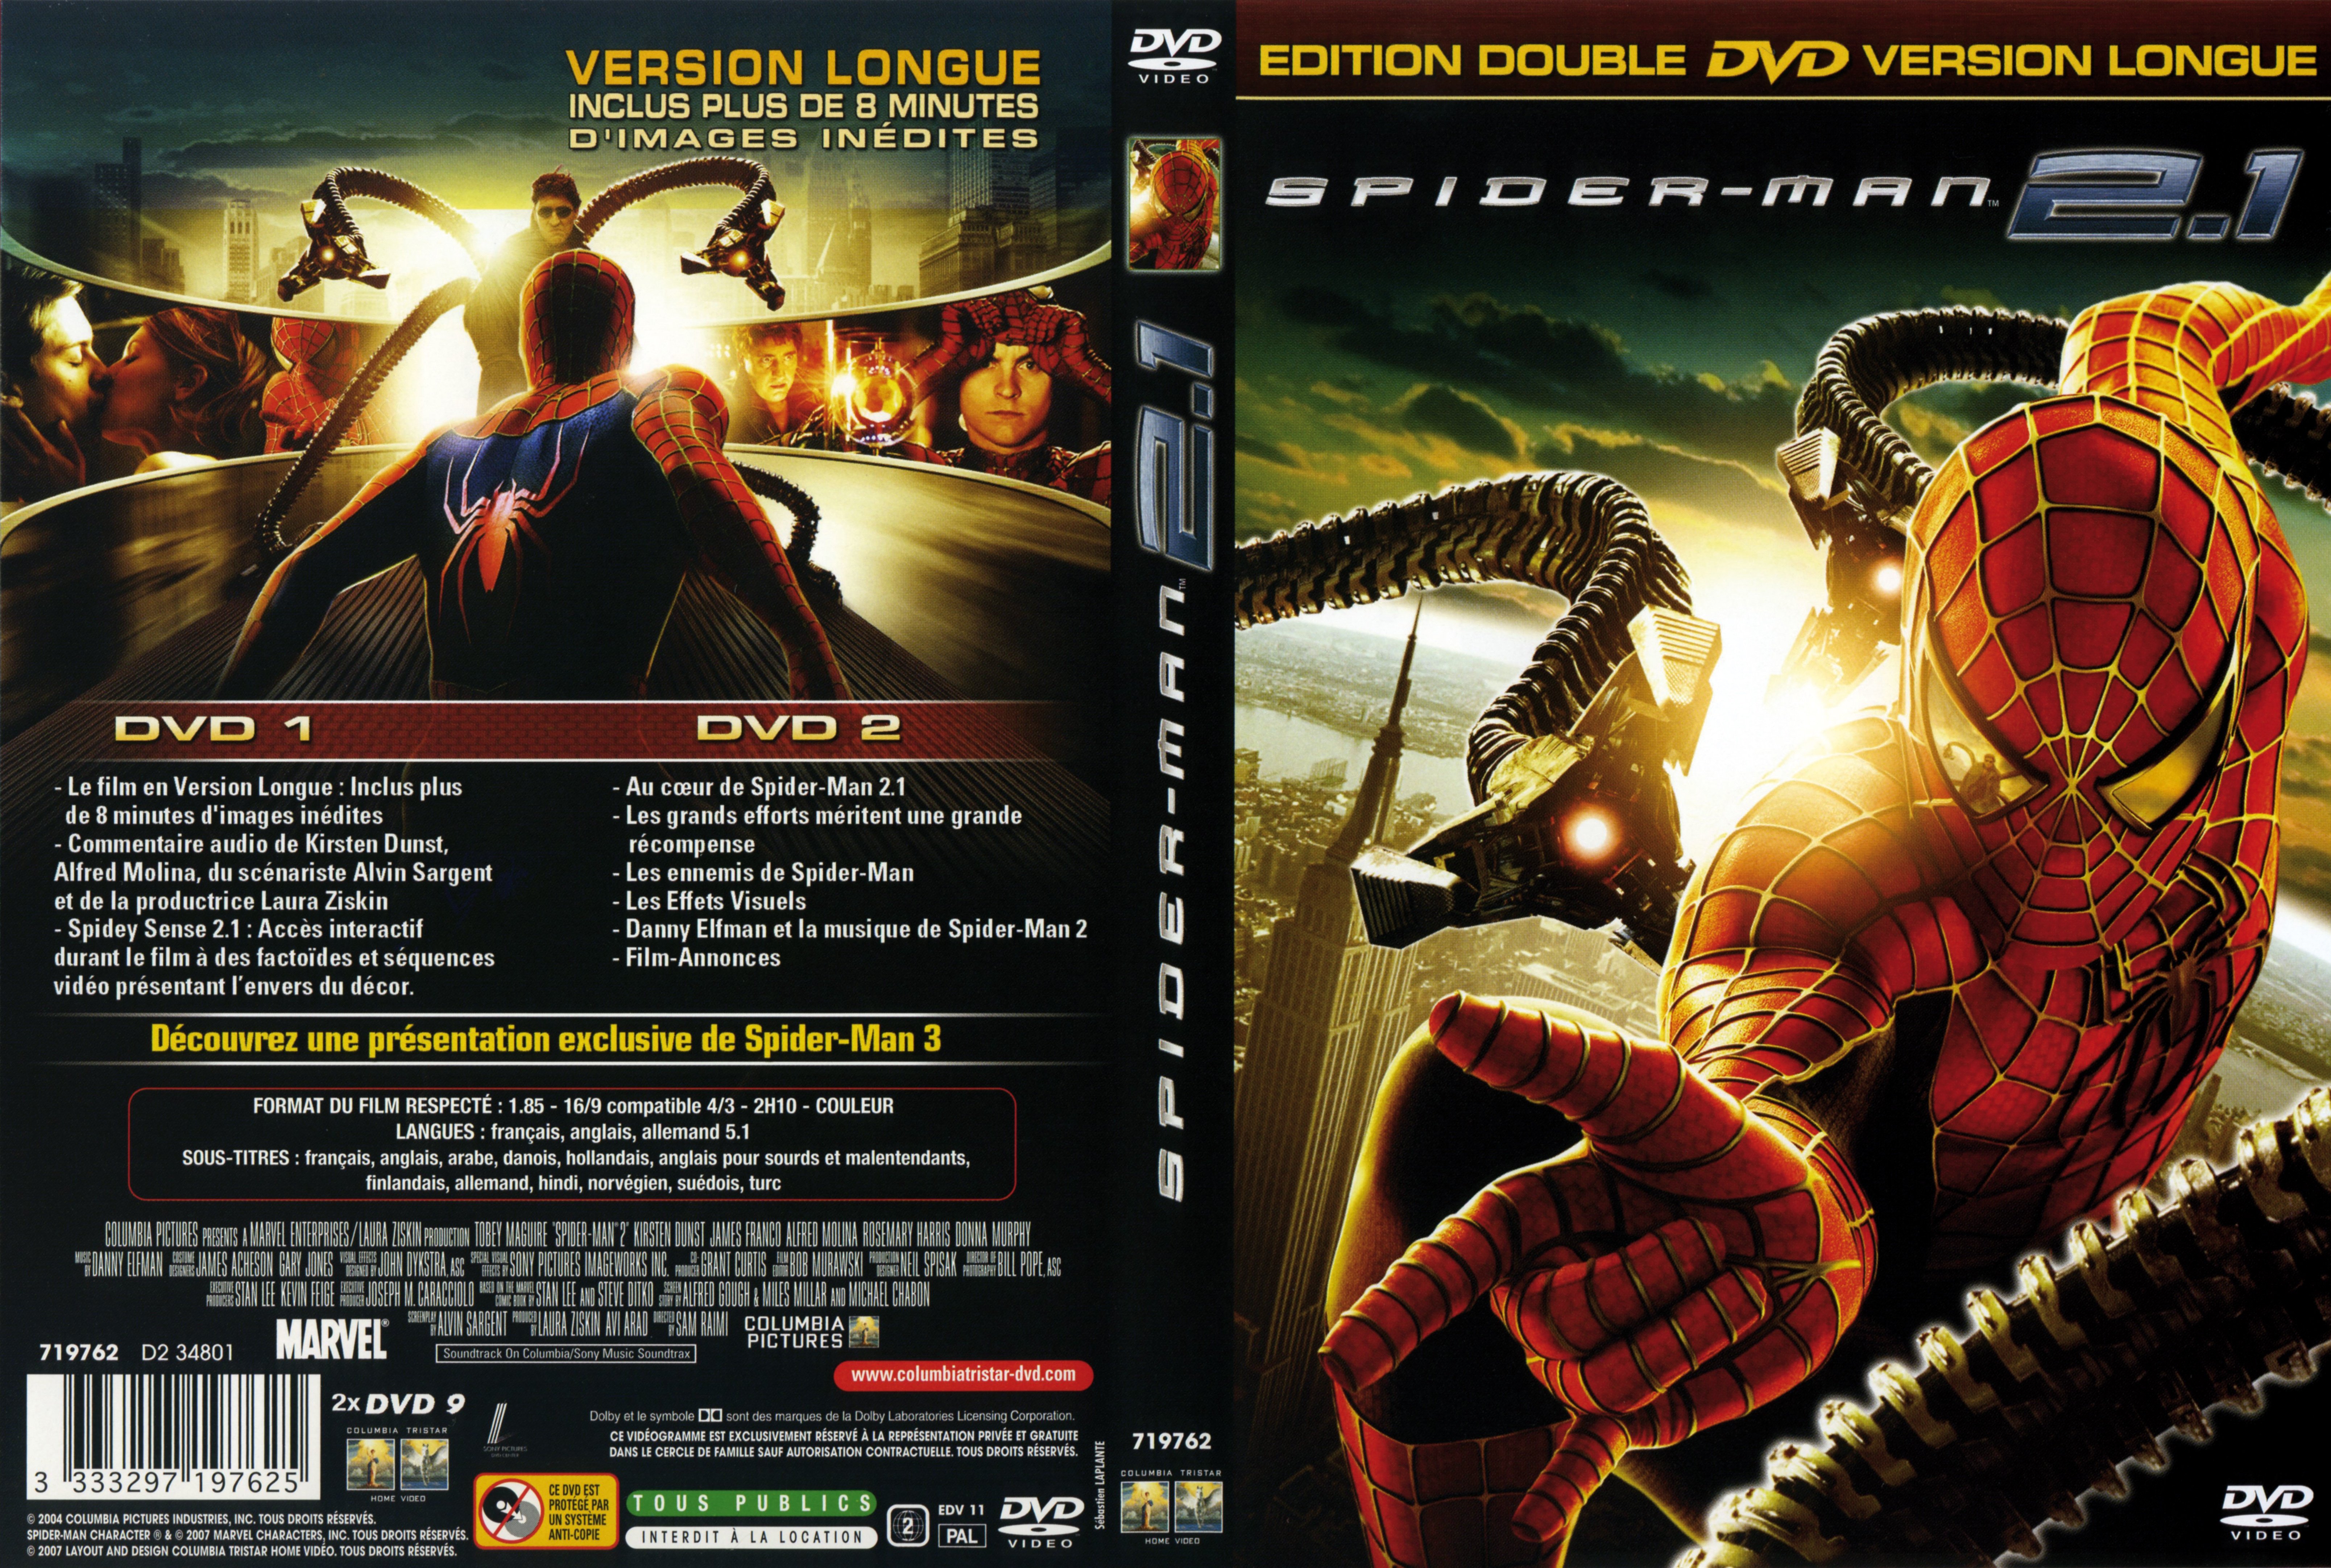 Jaquette DVD Spiderman 2 v3